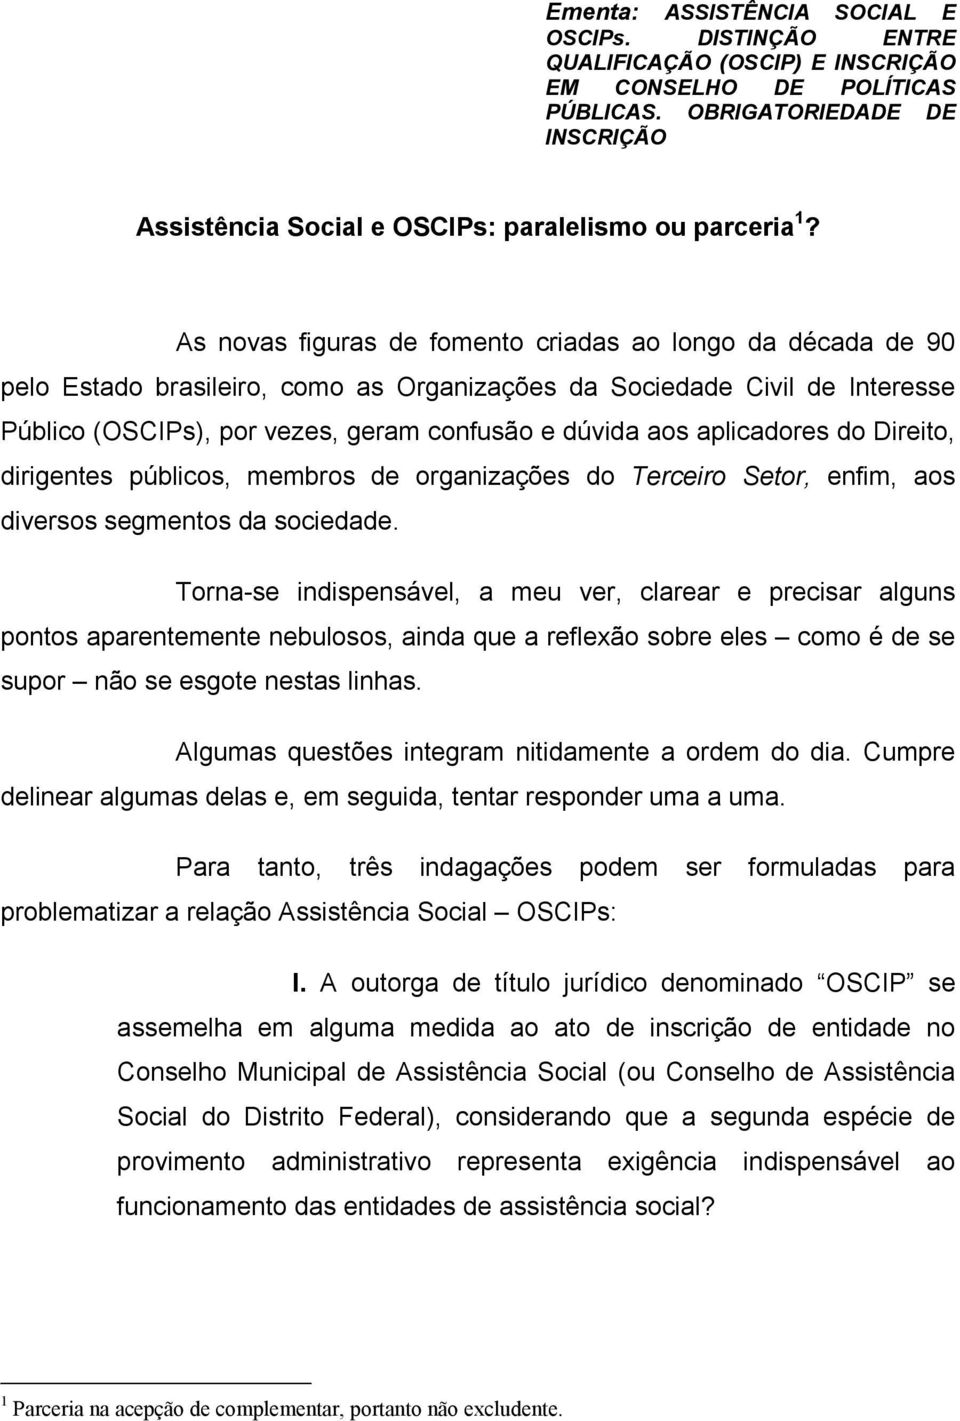 As novas figuras de fomento criadas ao longo da década de 90 pelo Estado brasileiro, como as Organizações da Sociedade Civil de Interesse Público (OSCIPs), por vezes, geram confusão e dúvida aos